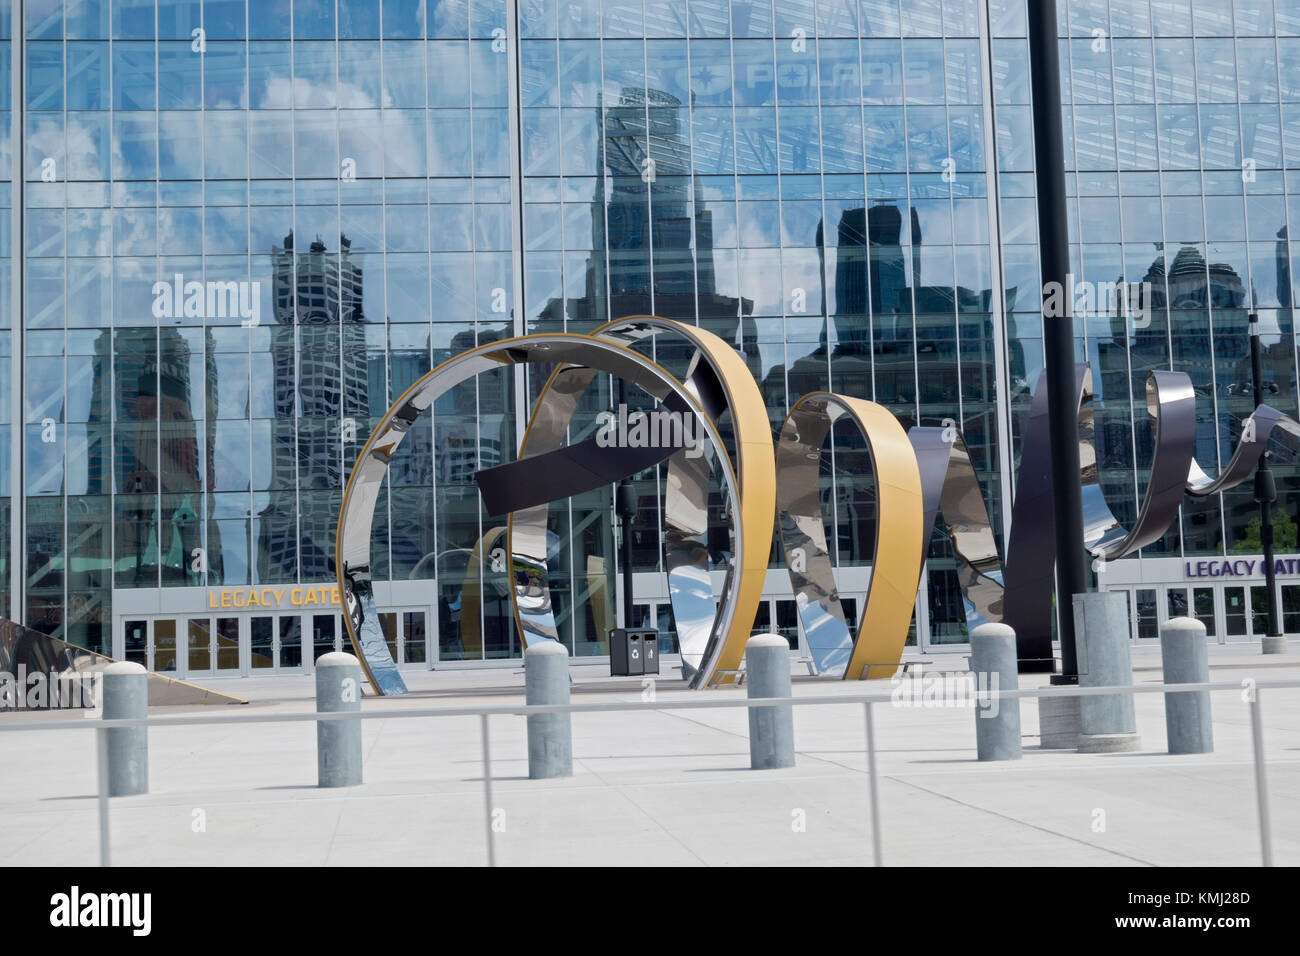 La Corne de ses sculptures en spirale de ruban métallique sur l'US Bank Stadium, Plaza de Medtronic. Minneapolis Minnesota MN USA Banque D'Images